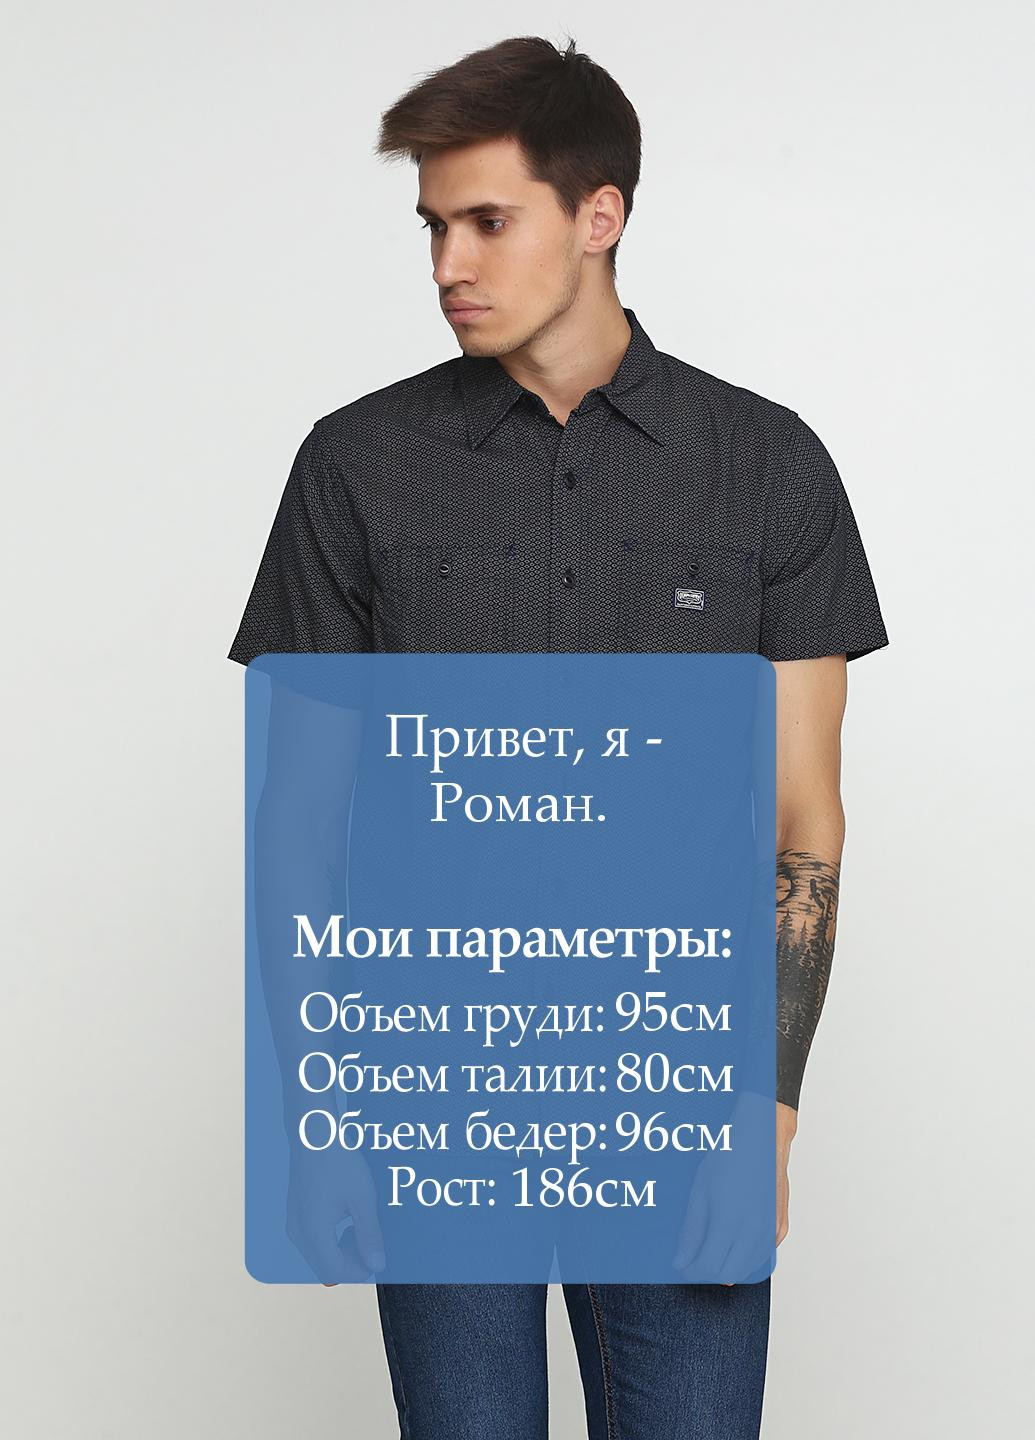 Темно-синяя футболка-тенниска для мужчин Ralph Lauren с геометрическим узором